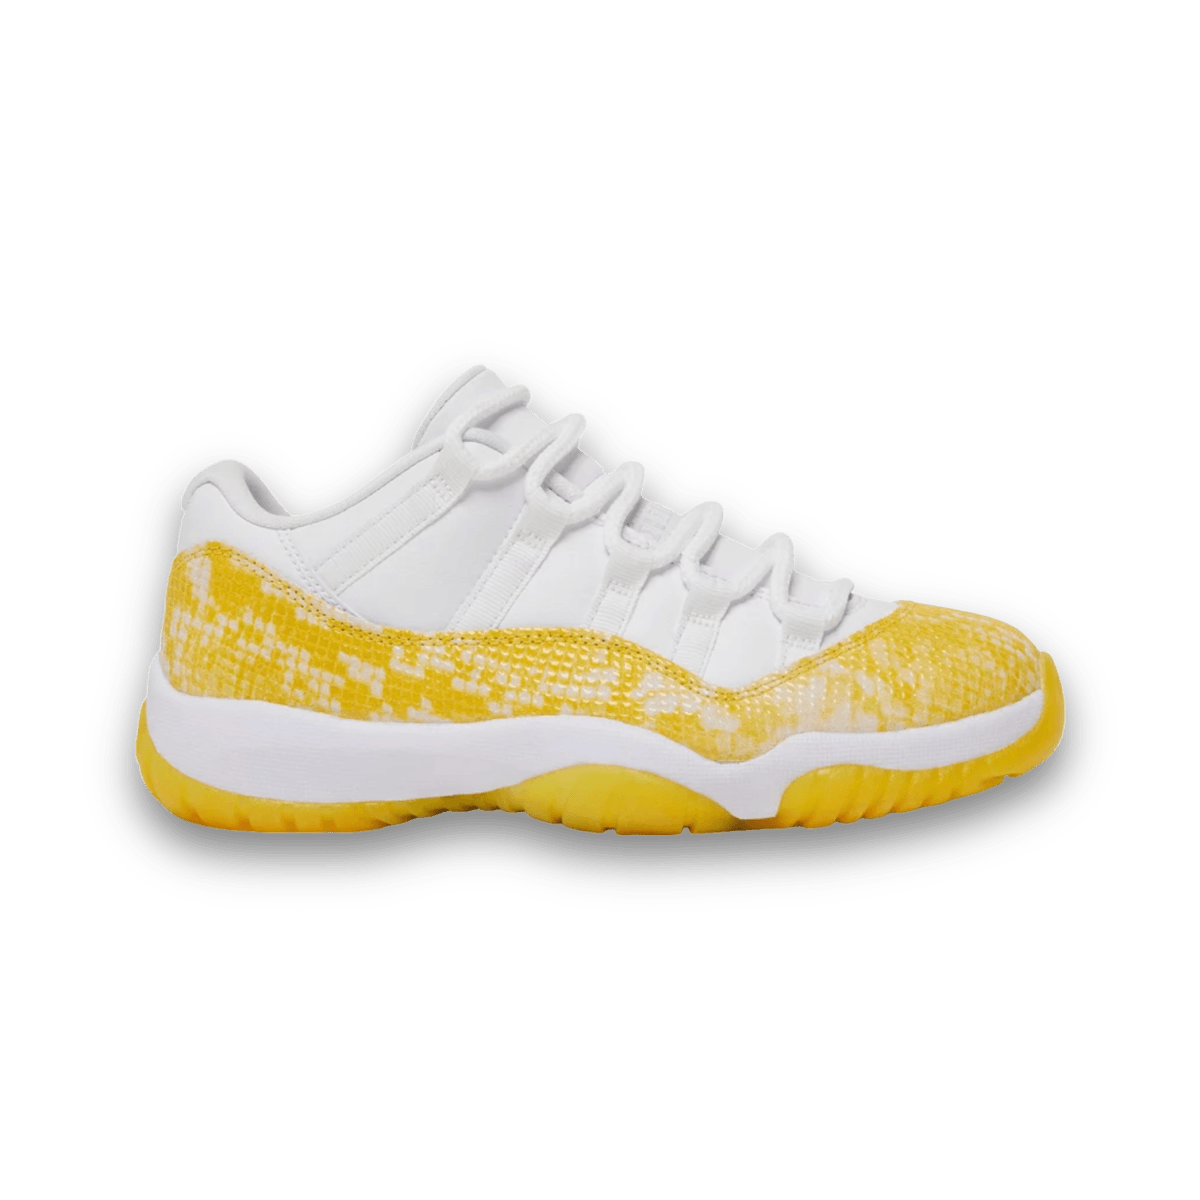 Jordan 11 Retro Low Yellow Snakeskin - Women - Low Sneaker - Jordan - Jawns on Fire